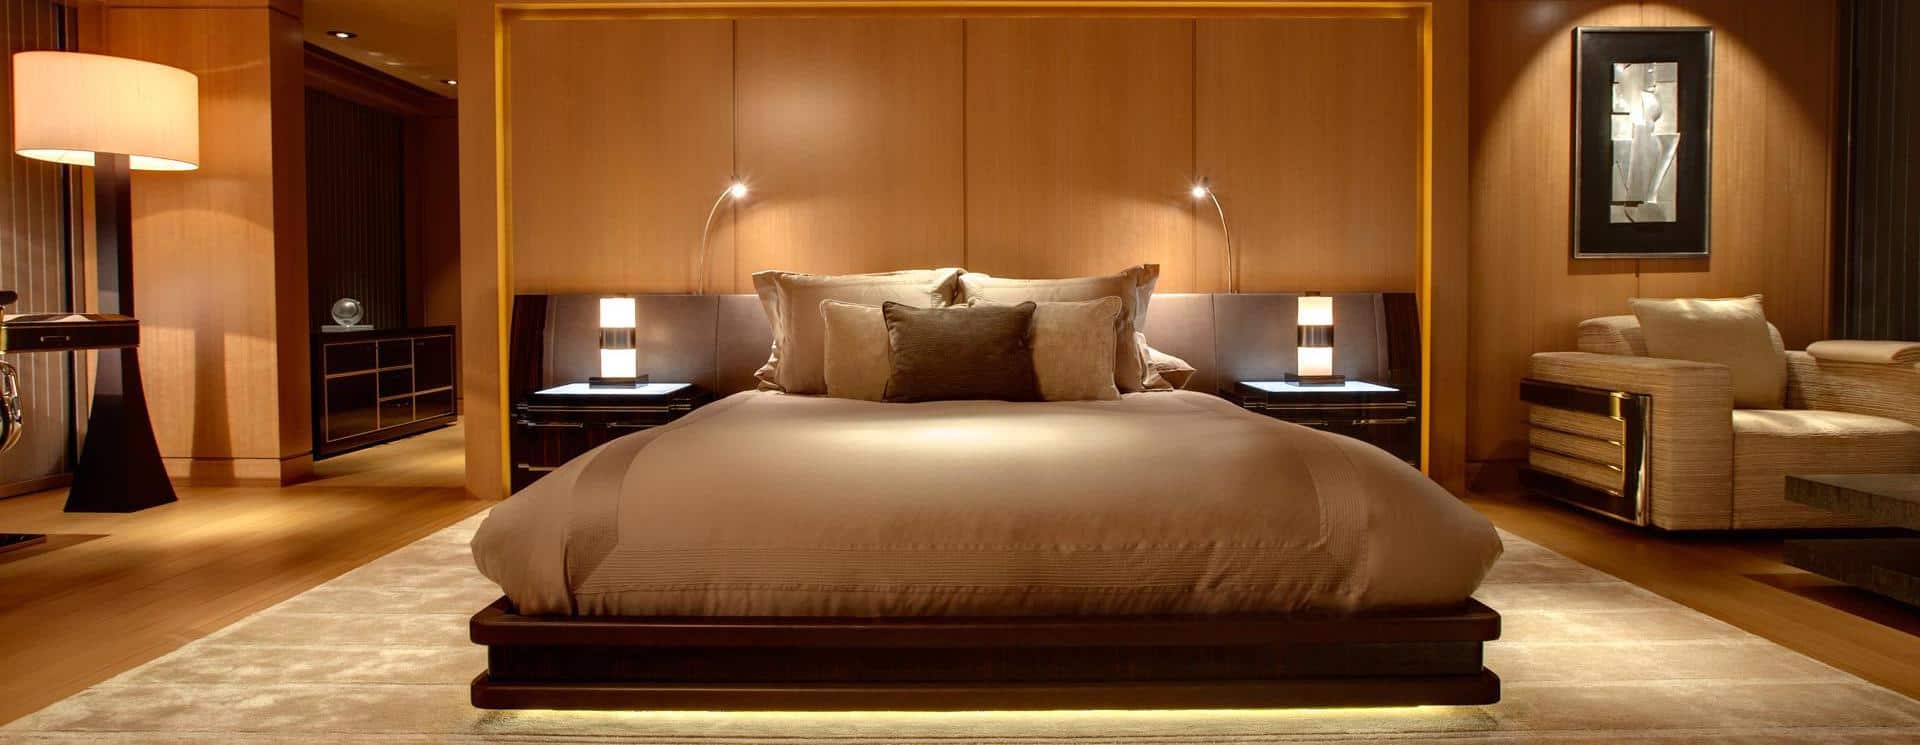 Топ-5 идей дизайна для современной спальни_3